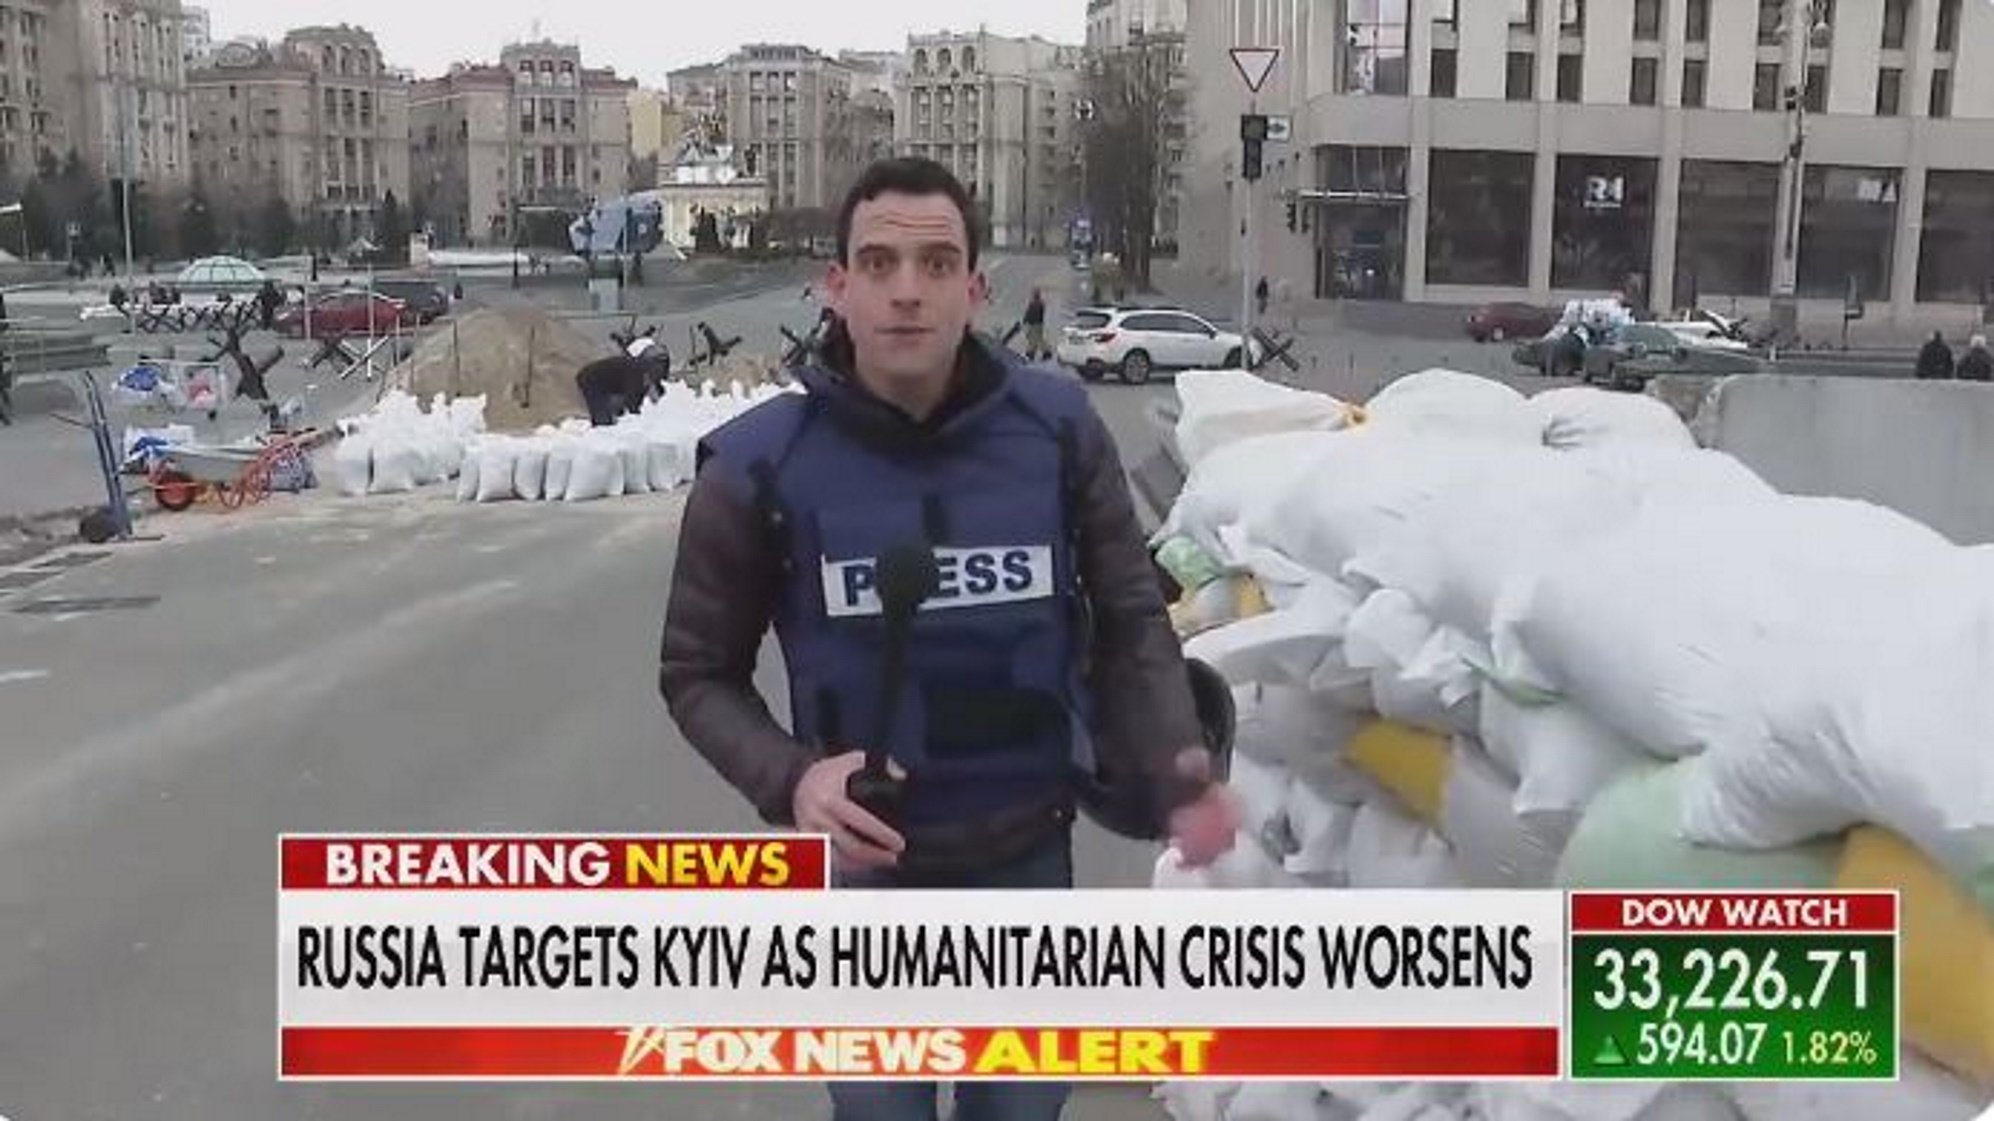 VÍDEO | Kíiv fa barricades a marxes forçades per frenar l'exèrcit rus: cap improvisació